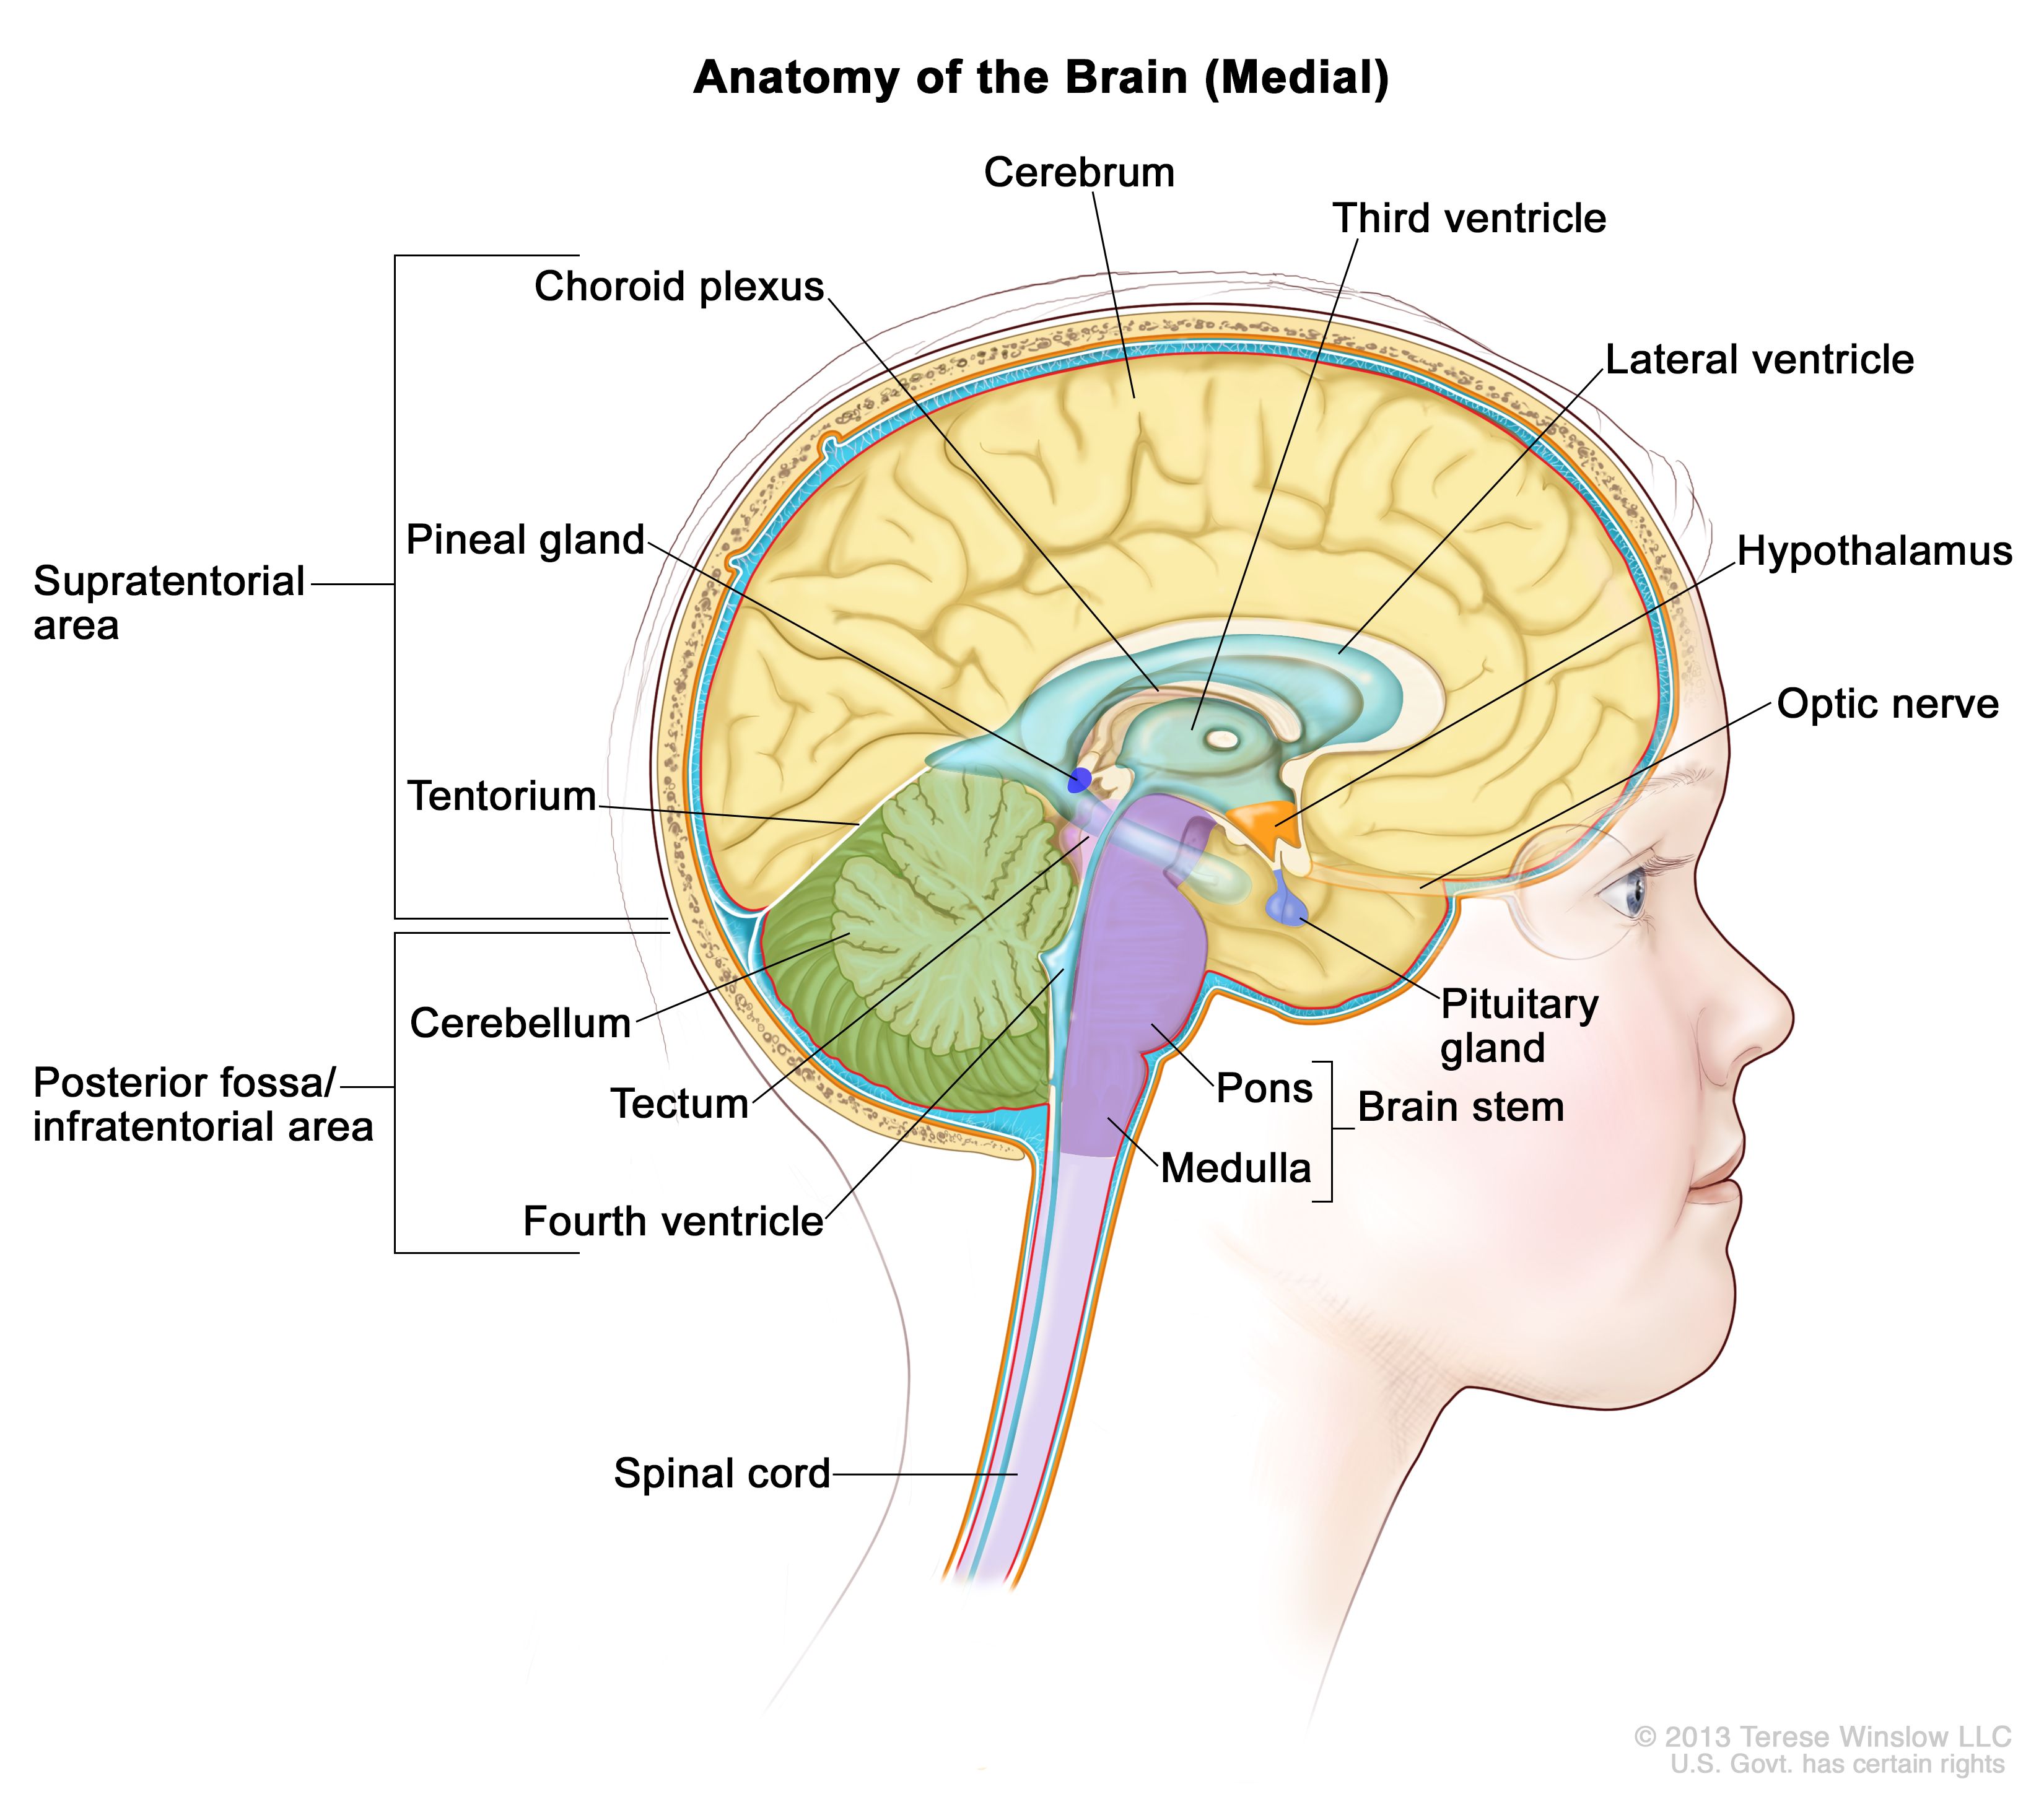 脳の解剖図：テント上（脳の上部）および後頭蓋窩/テント下（脳の下部後方）を示す。テント上の領域には、大脳、側脳室、第三脳室、脈絡叢、視床下部、松果体、下垂体、視神経が含まれている。後頭蓋窩/テント下の領域には、小脳、視蓋、第四脳室、脳幹（橋、延髄）が含まれている。テントおよび脊髄も示されている。